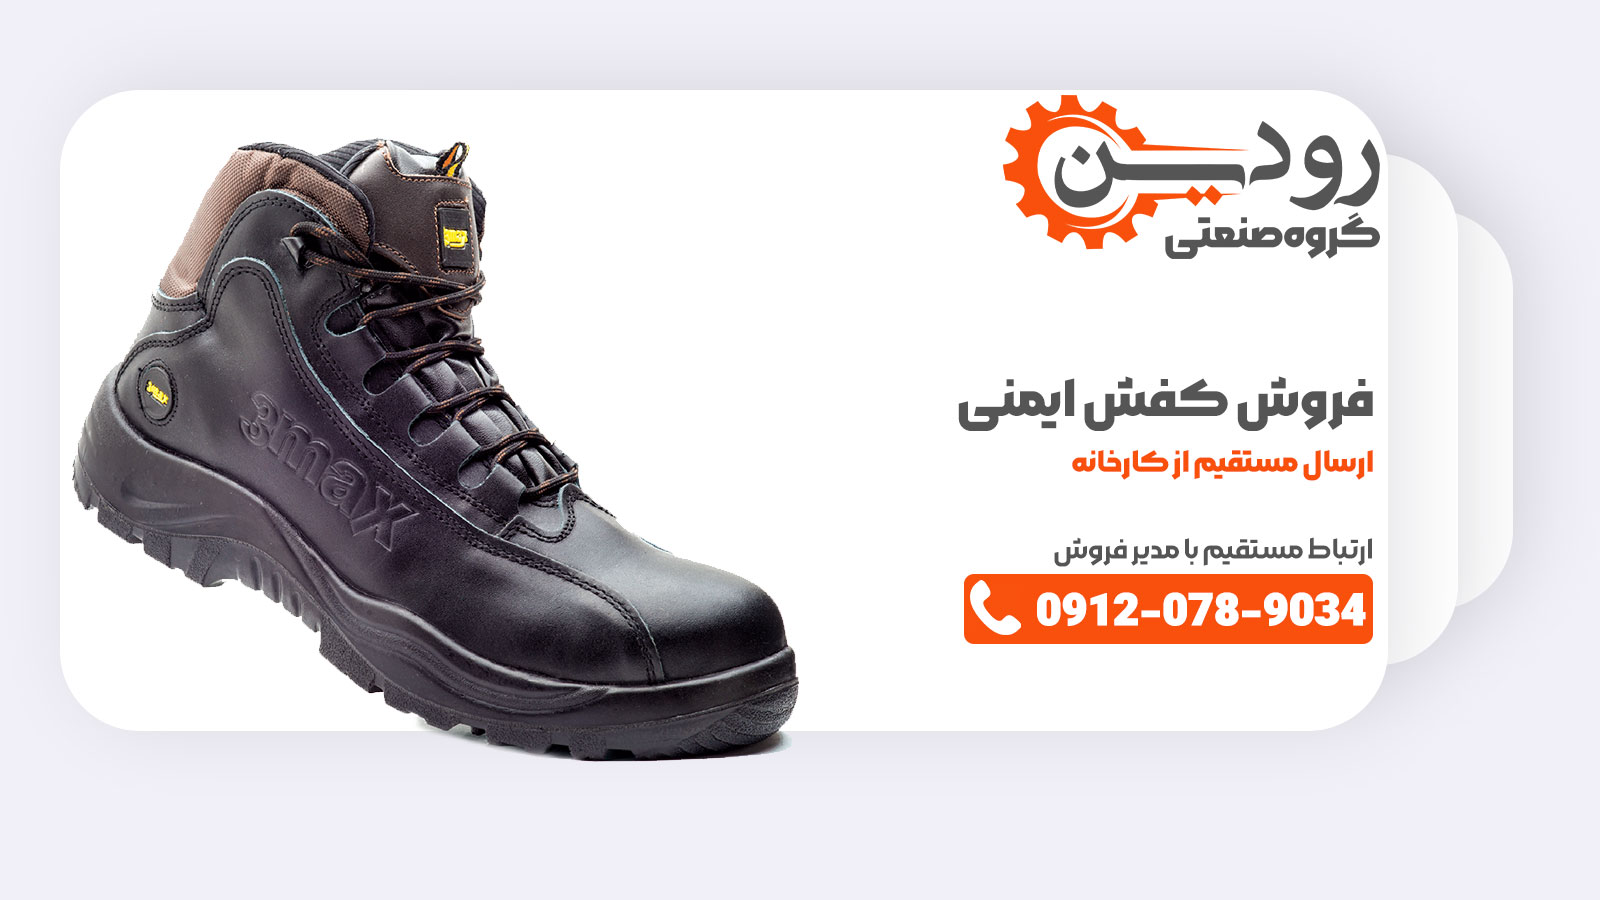 بندرعباس یکی از شهرهایی است که کارخانه تولید کفش ایمنی در آنجا تولید انجام می دهد و پخش خود را به سراسر کشور ایران به انجام می رساند.